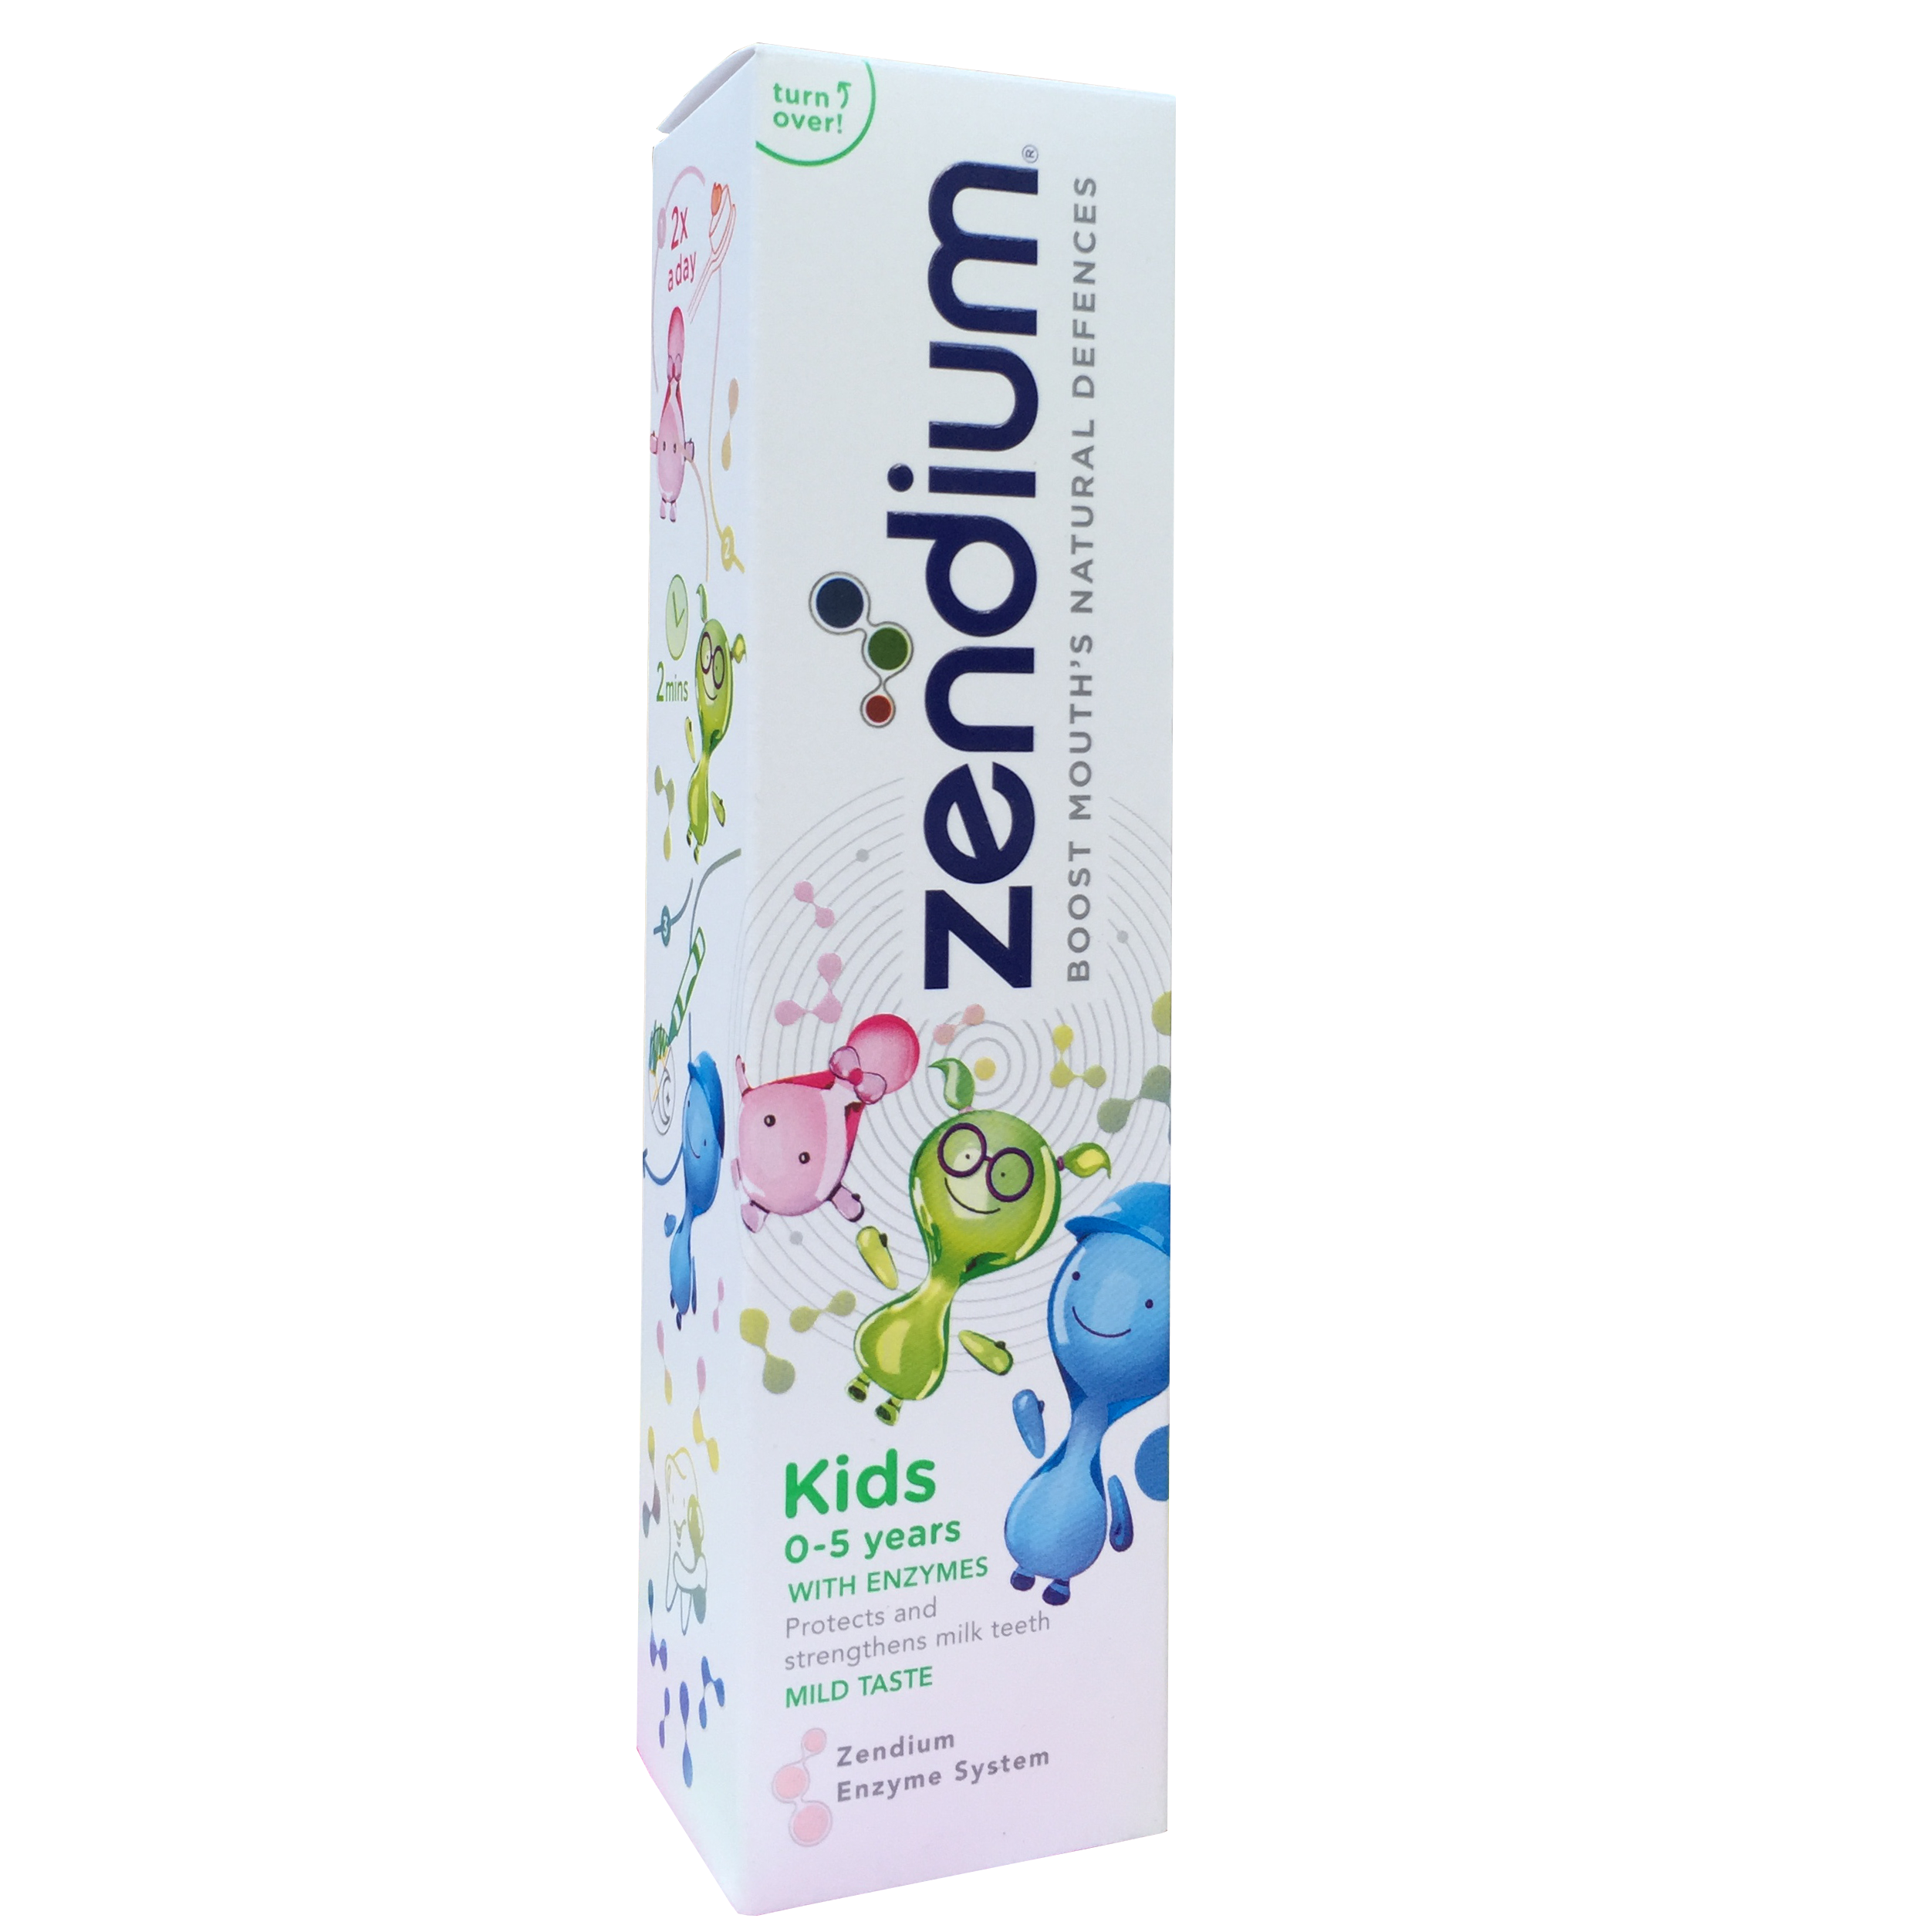 Pasta de dinti pentu copii, Zendium Kids, 0-5 ani, 75 ml, Unilever